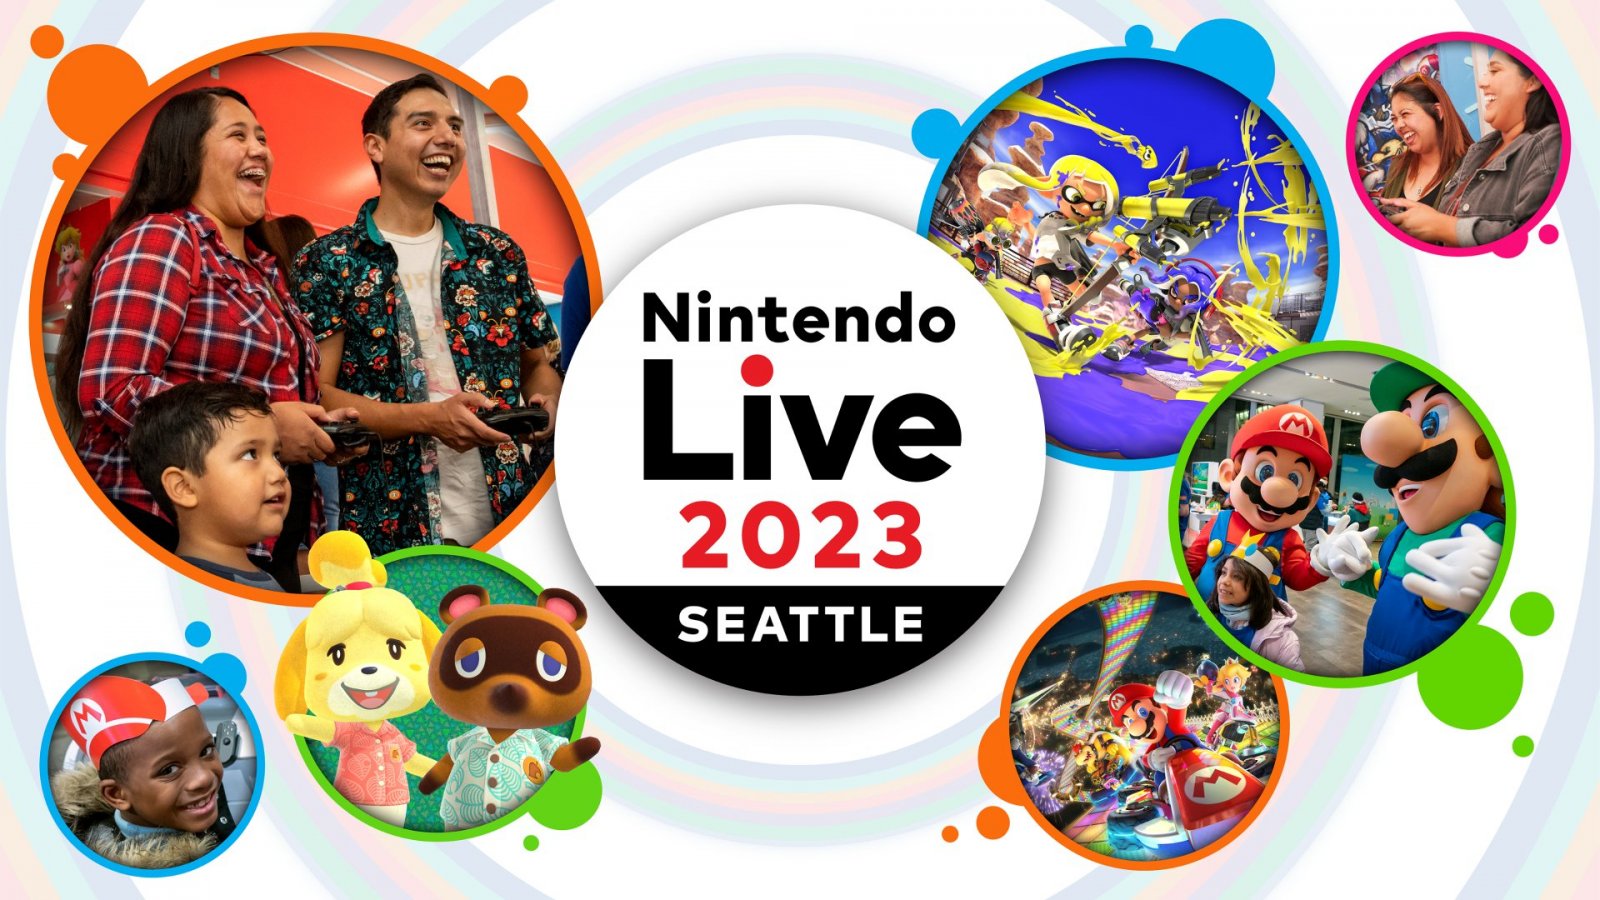 Nintendo Live 2023: annunciato un evento con giochi, tornei ed esibizioni dal vivo